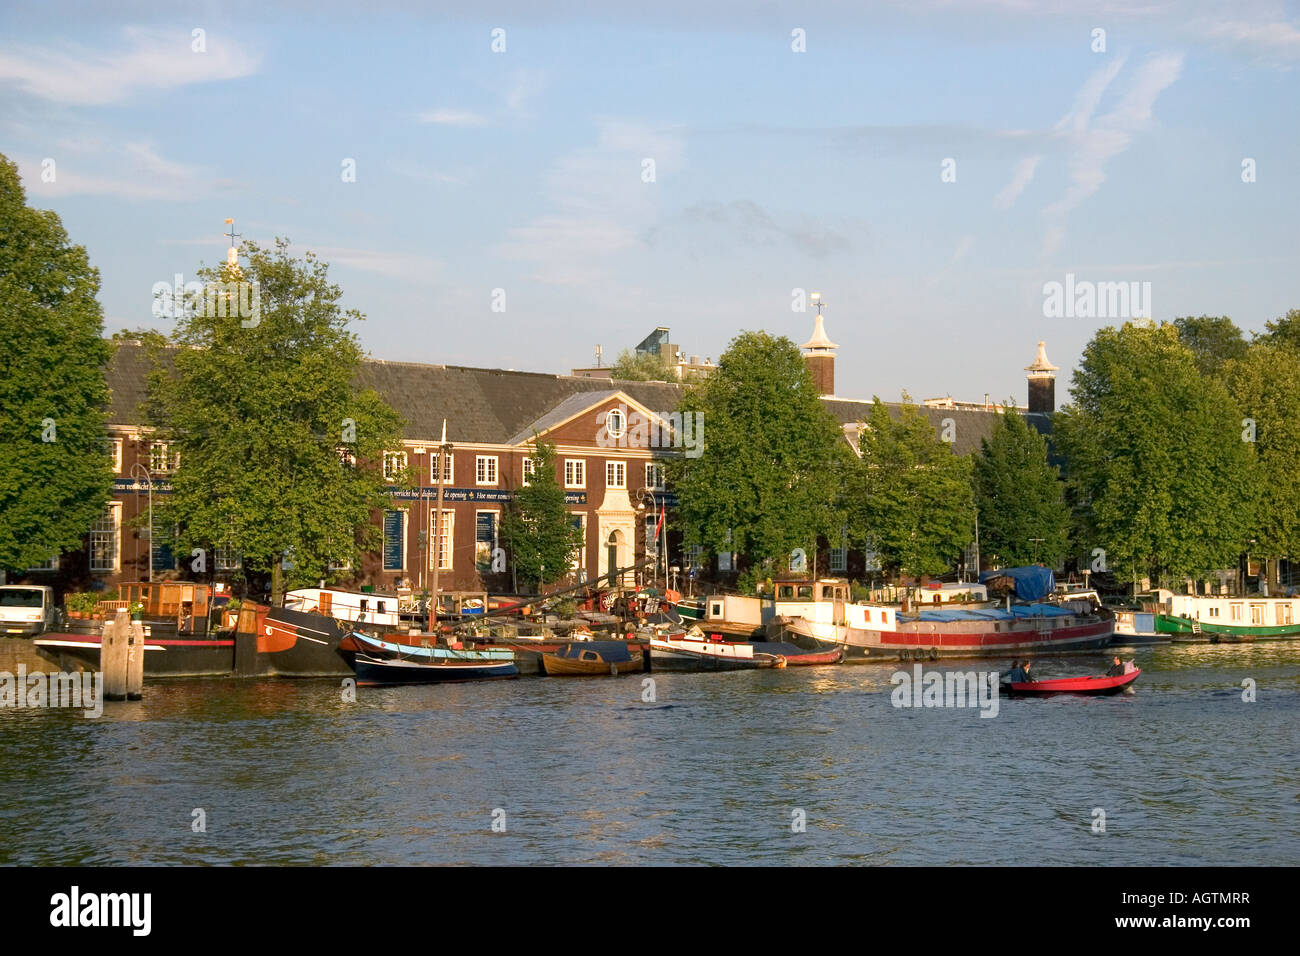 Navigation de plaisance sur la rivière Amstel à Amsterdam Pays-Bas Banque D'Images